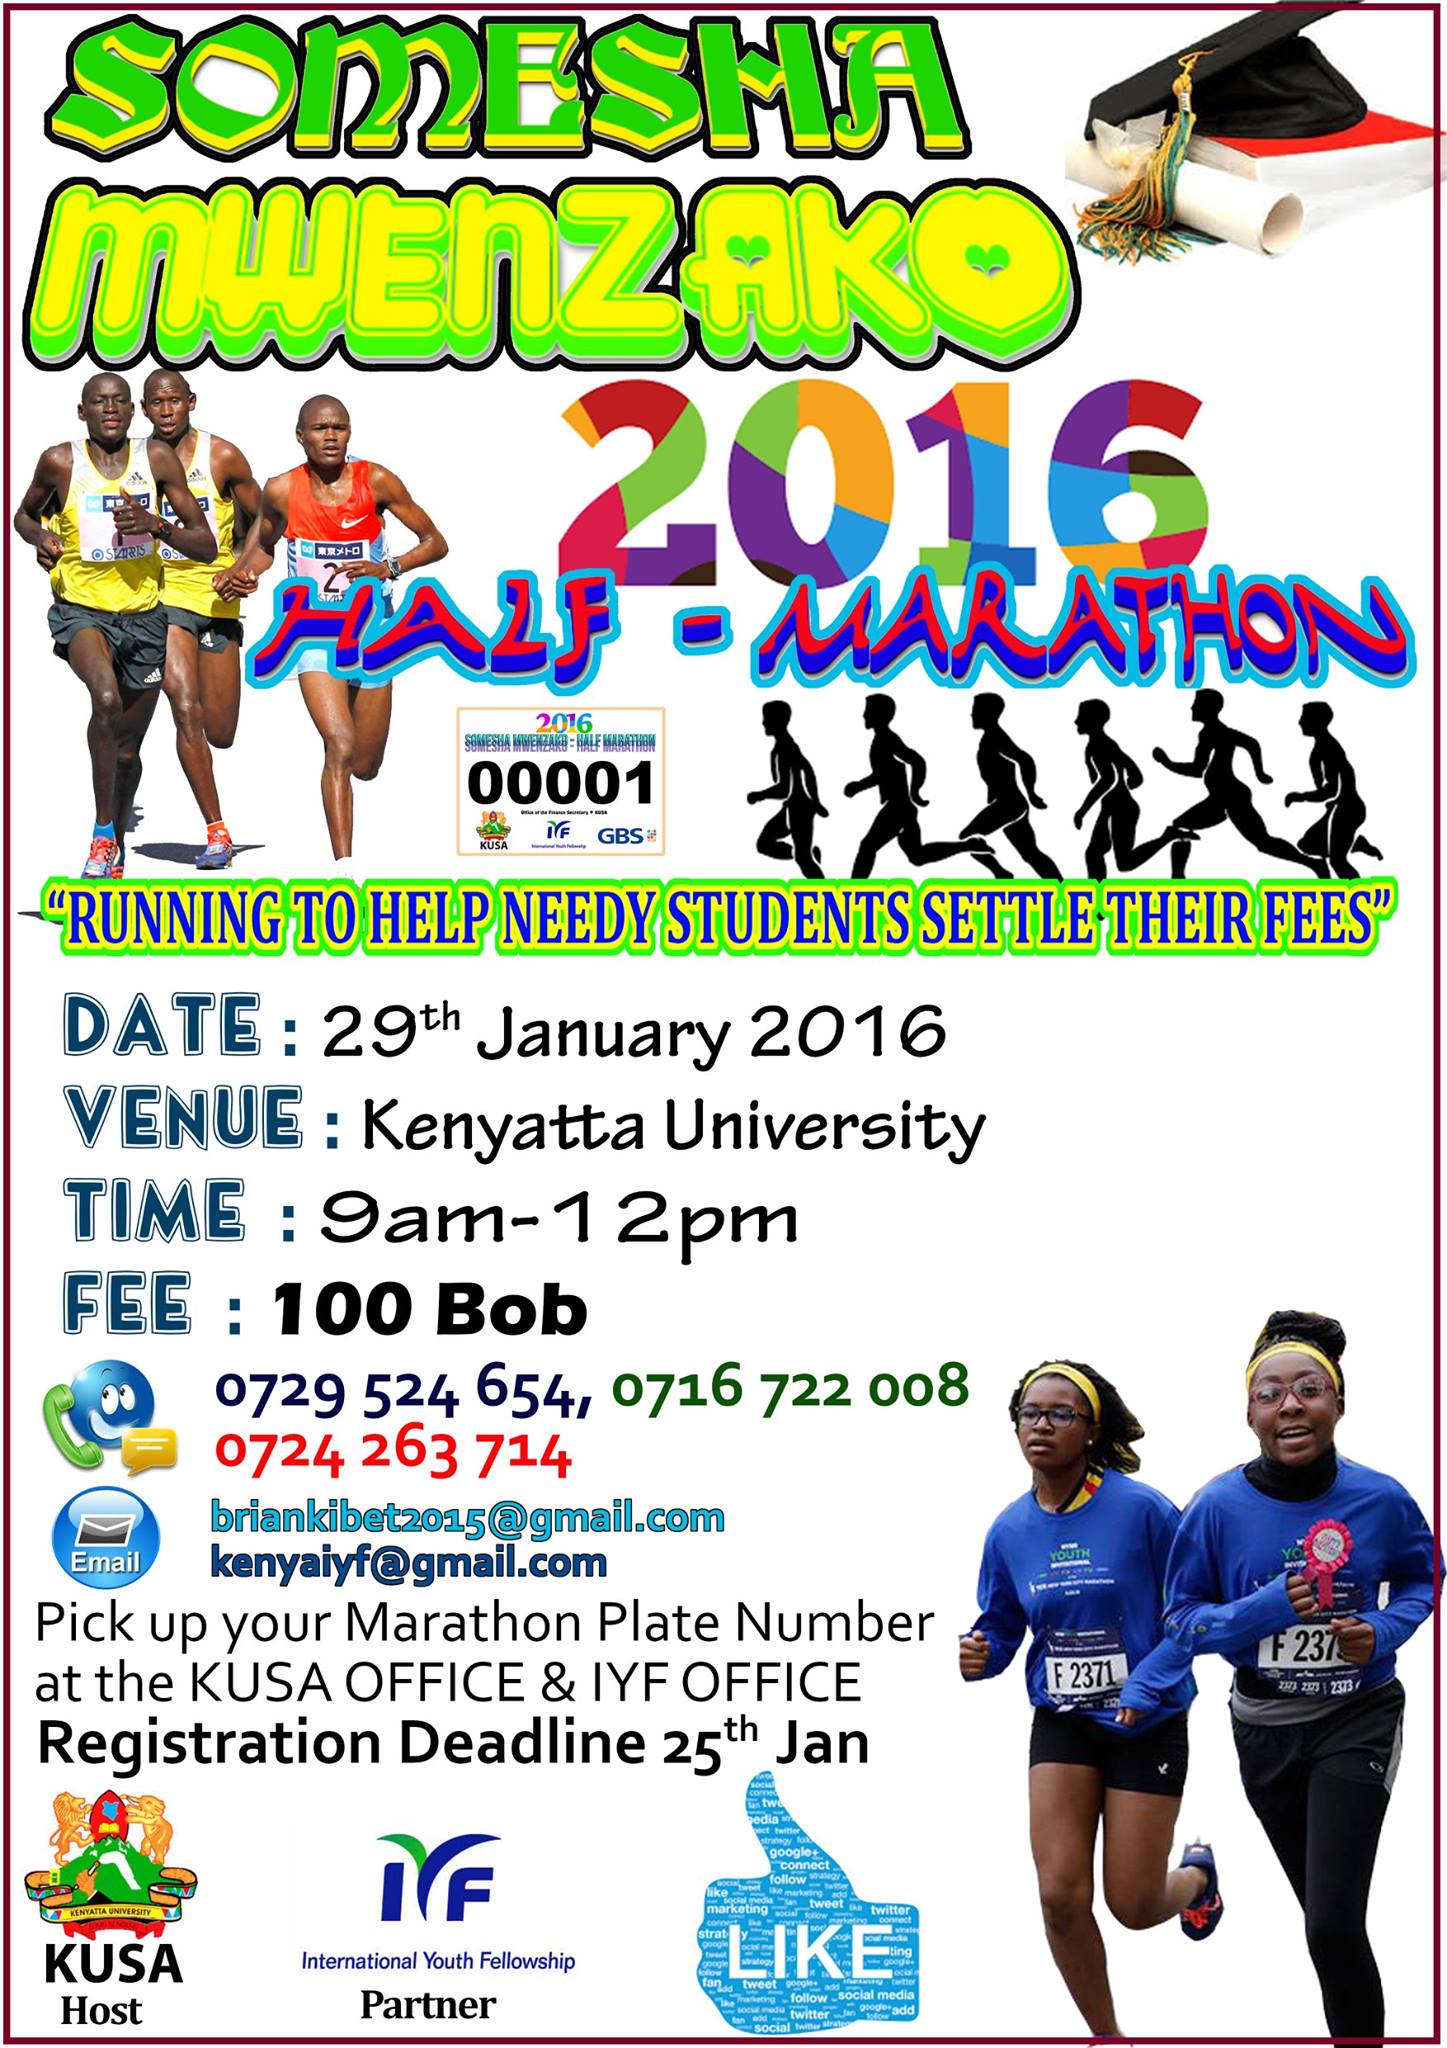 The Somesha Mwenzako Marathon